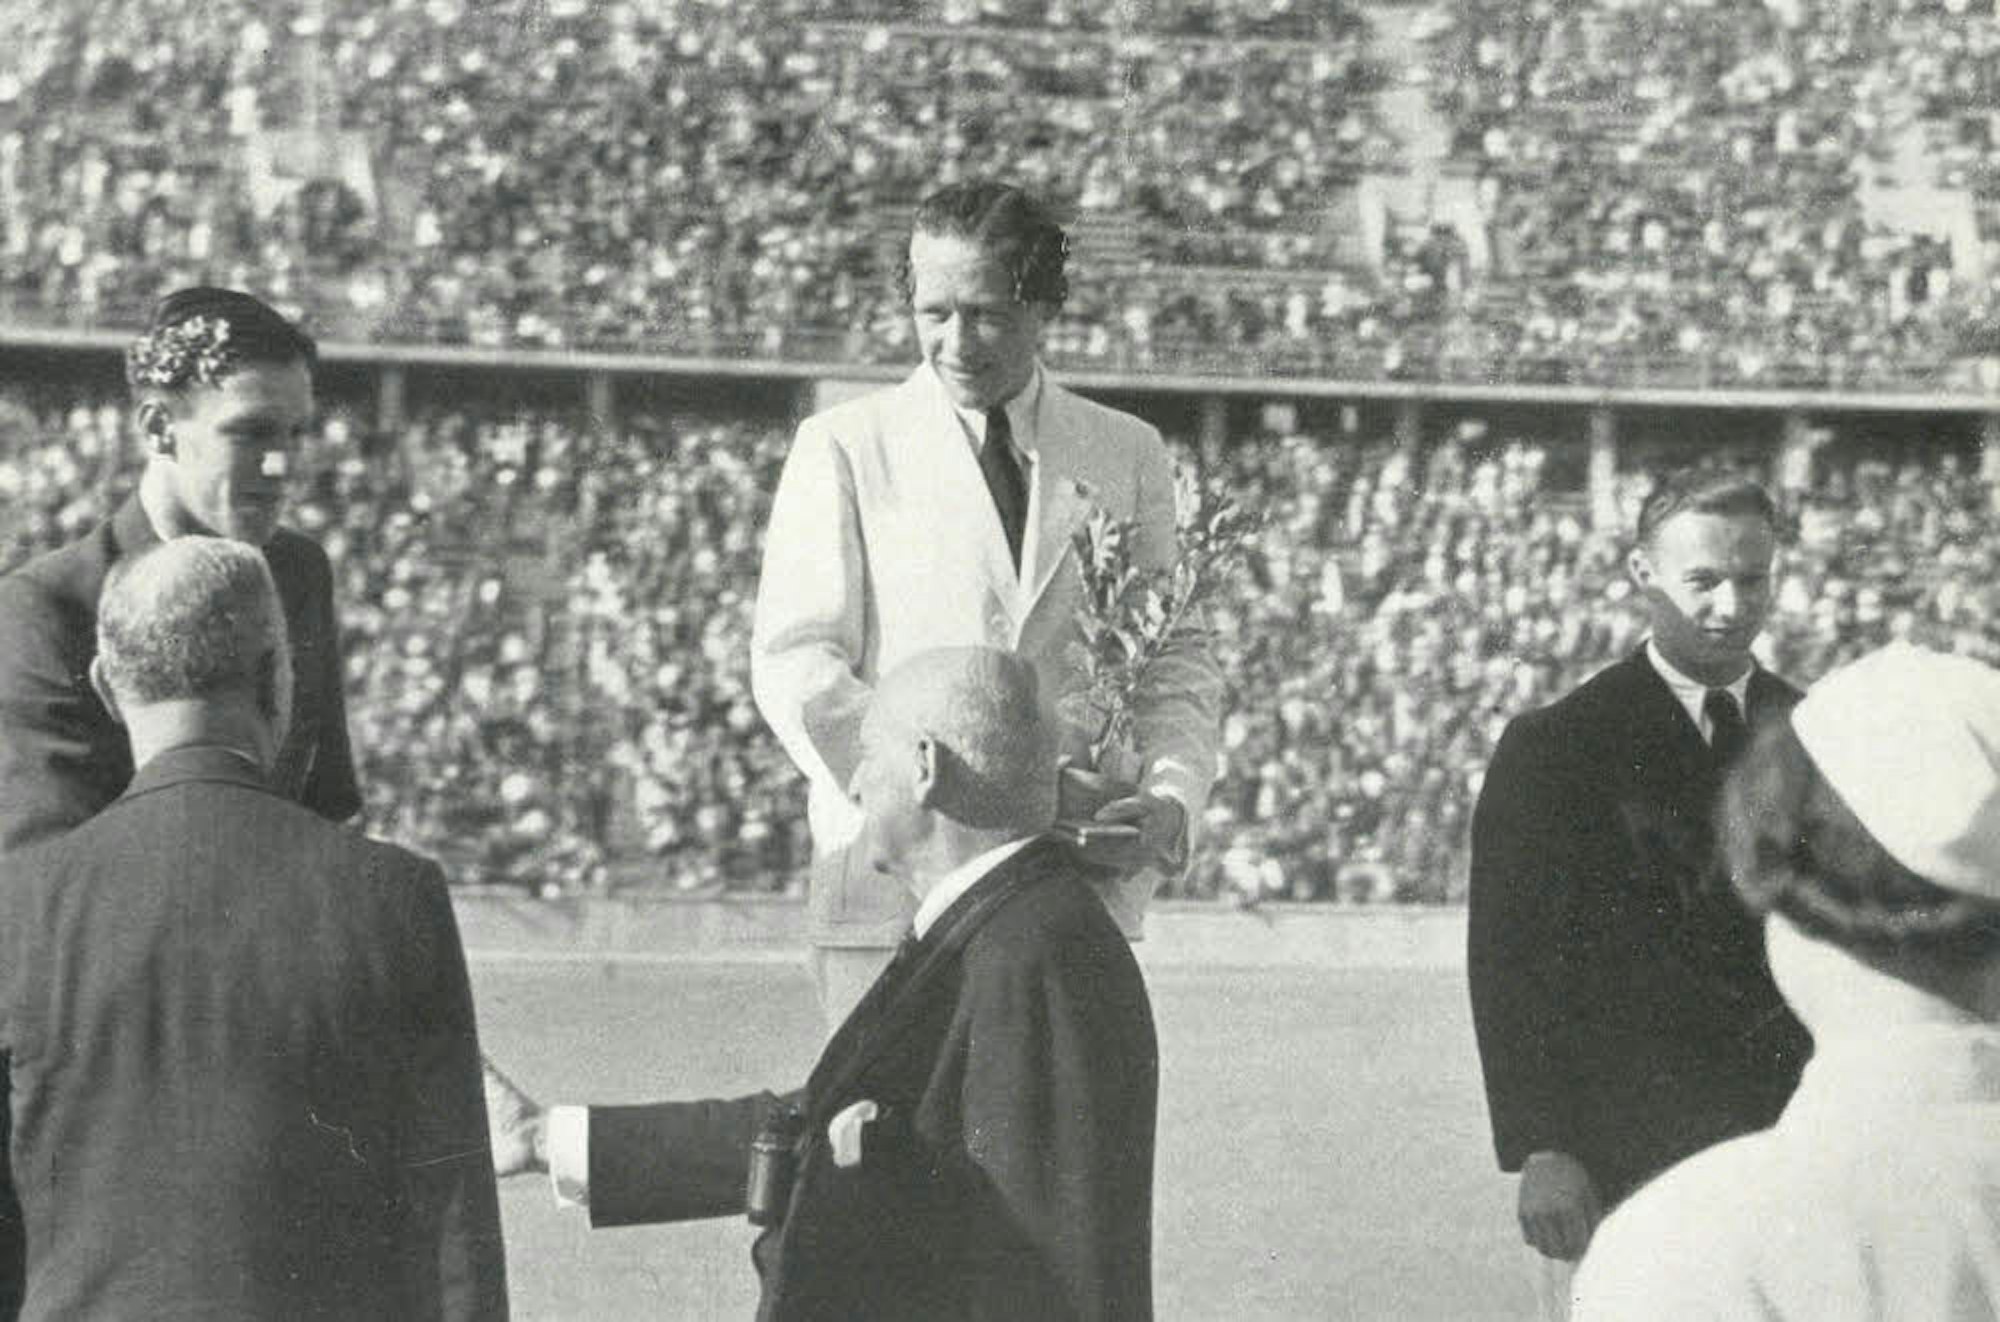 Toni Merkens (Mitte) bei der Siegerehrung im Berliner Olympiastadion. In der Hand hält er den Eichen-Setzling, den er zusätzlich zur Goldmedaille überreicht bekam.